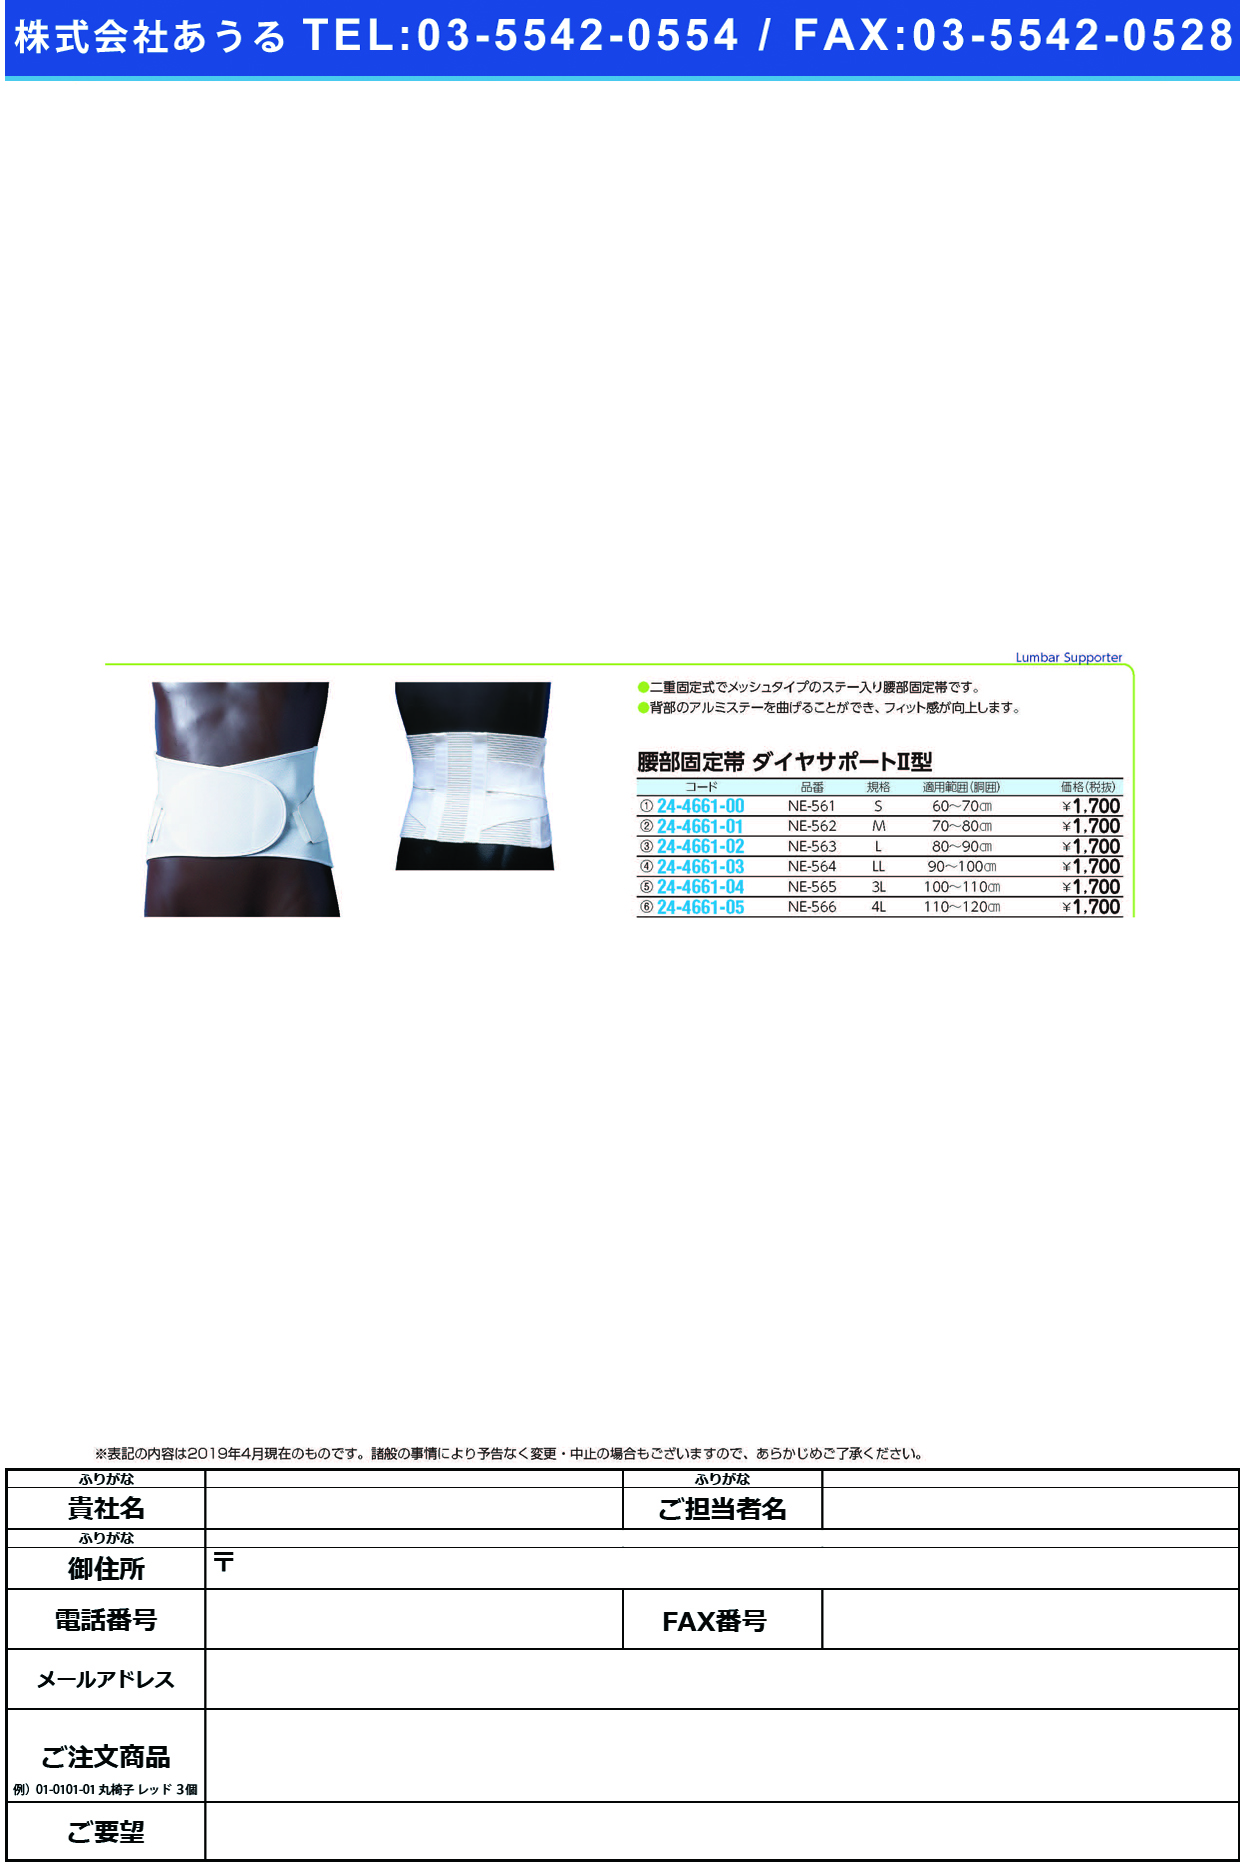 (24-4661-02)ダイヤサポート?型（Ｌ） NE-563(80-90CM) ﾀﾞｲﾔｻﾎﾟｰﾄ2ｶﾞﾀL(日本衛材)【1箱単位】【2019年カタログ商品】